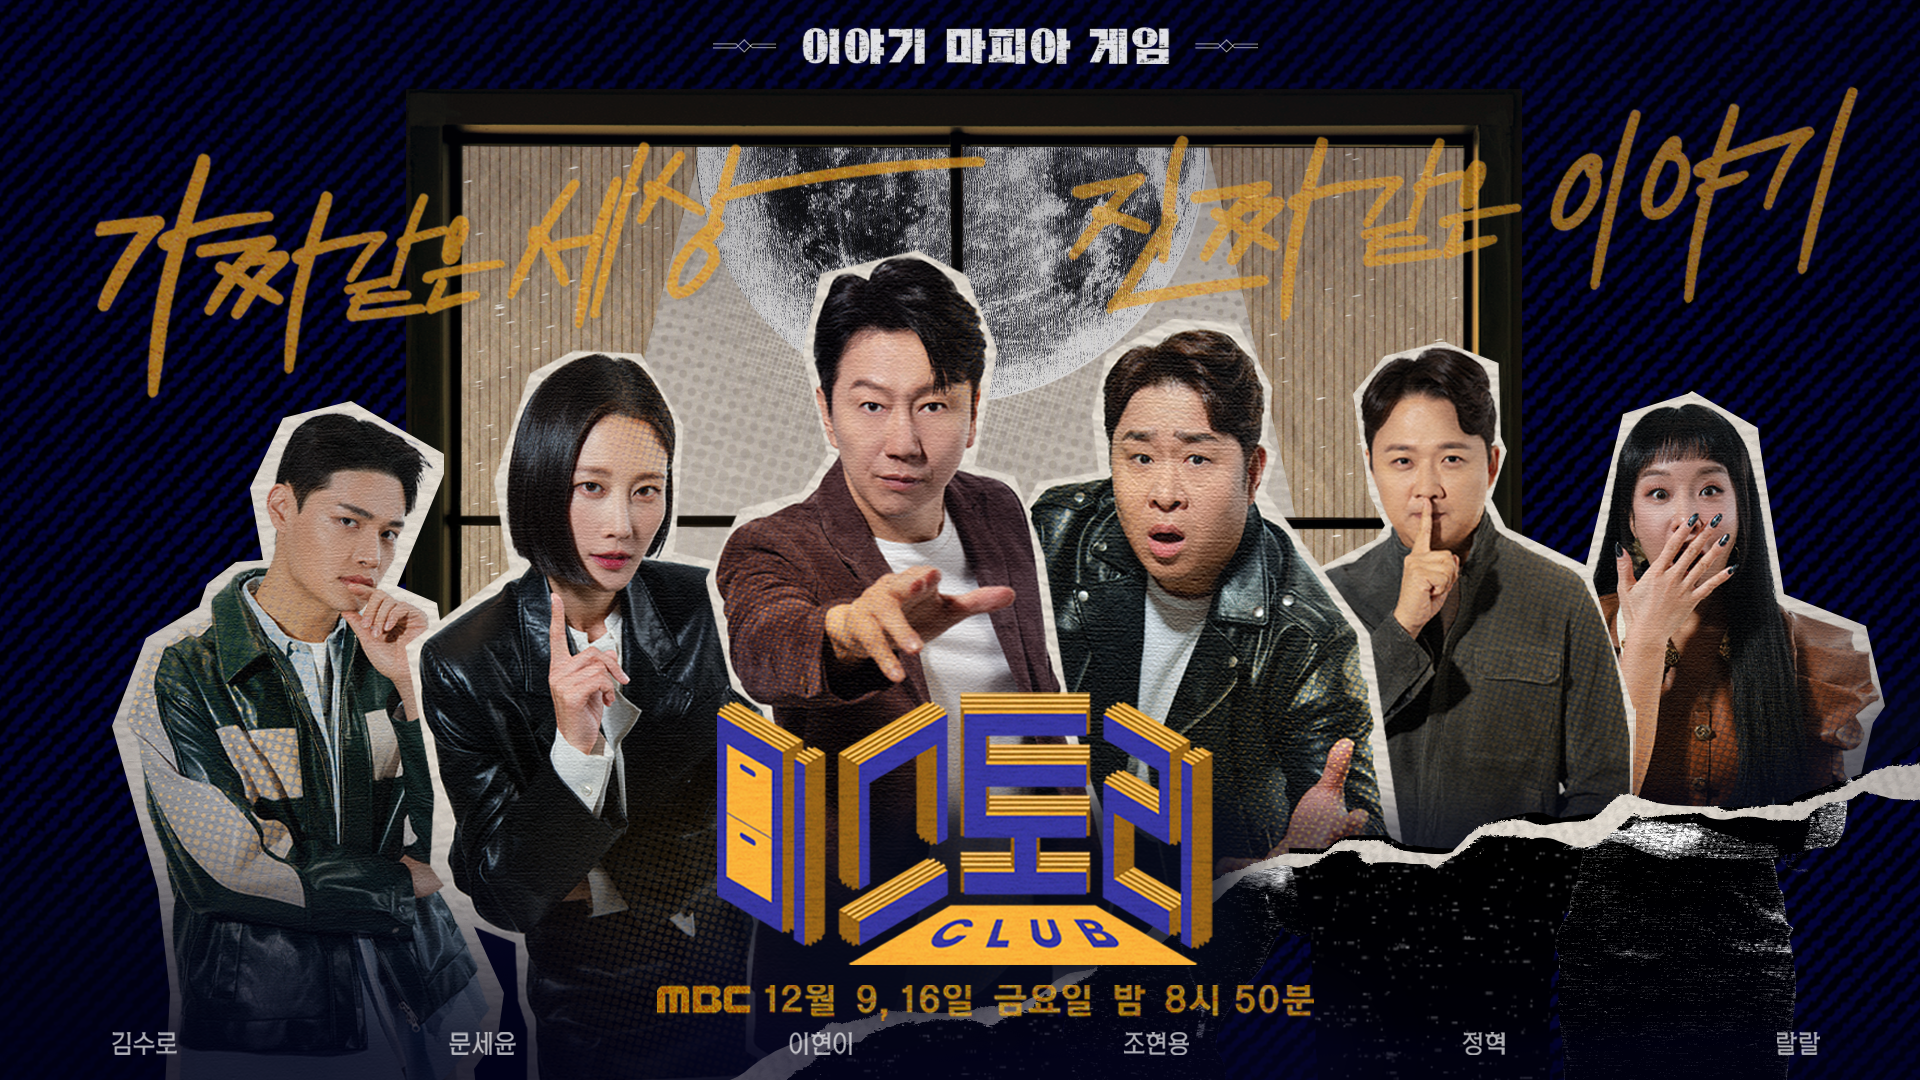 MBC 새 예능 '미스토리 클럽', 9일 첫방…"마피아 게임＋토크 결합"